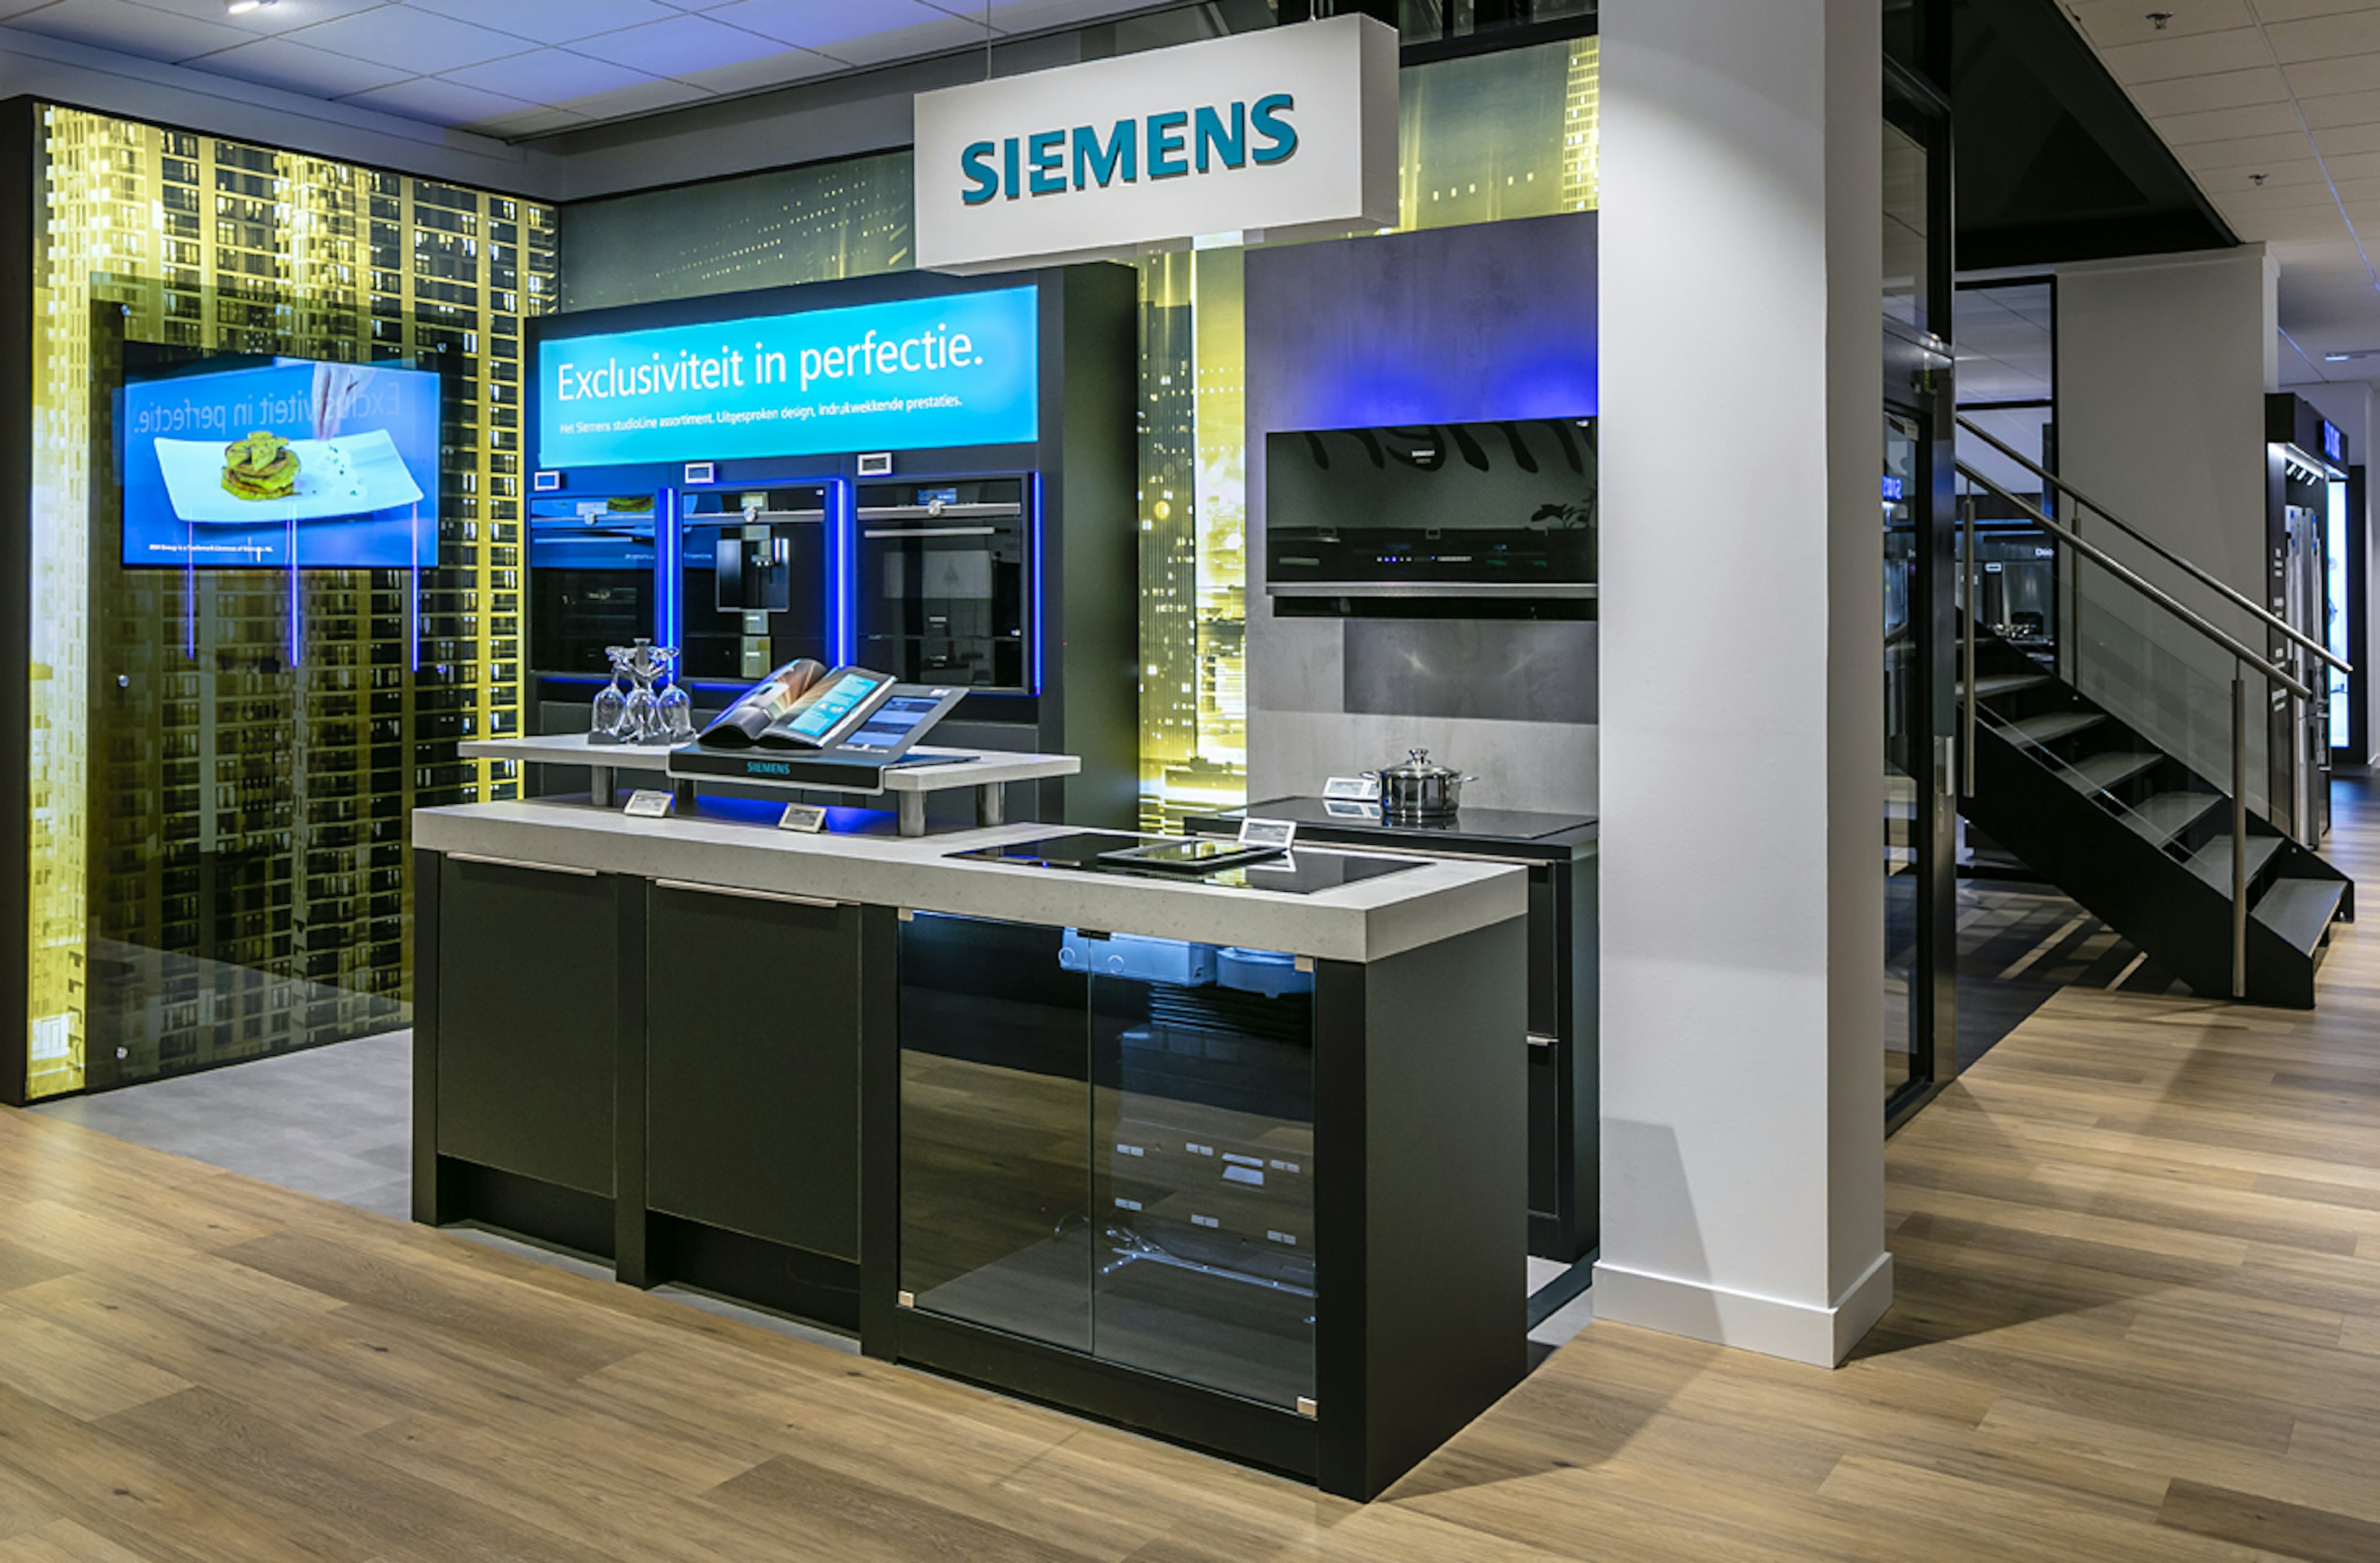 Exclusieve keukenapparatuur van Siemens studioLine